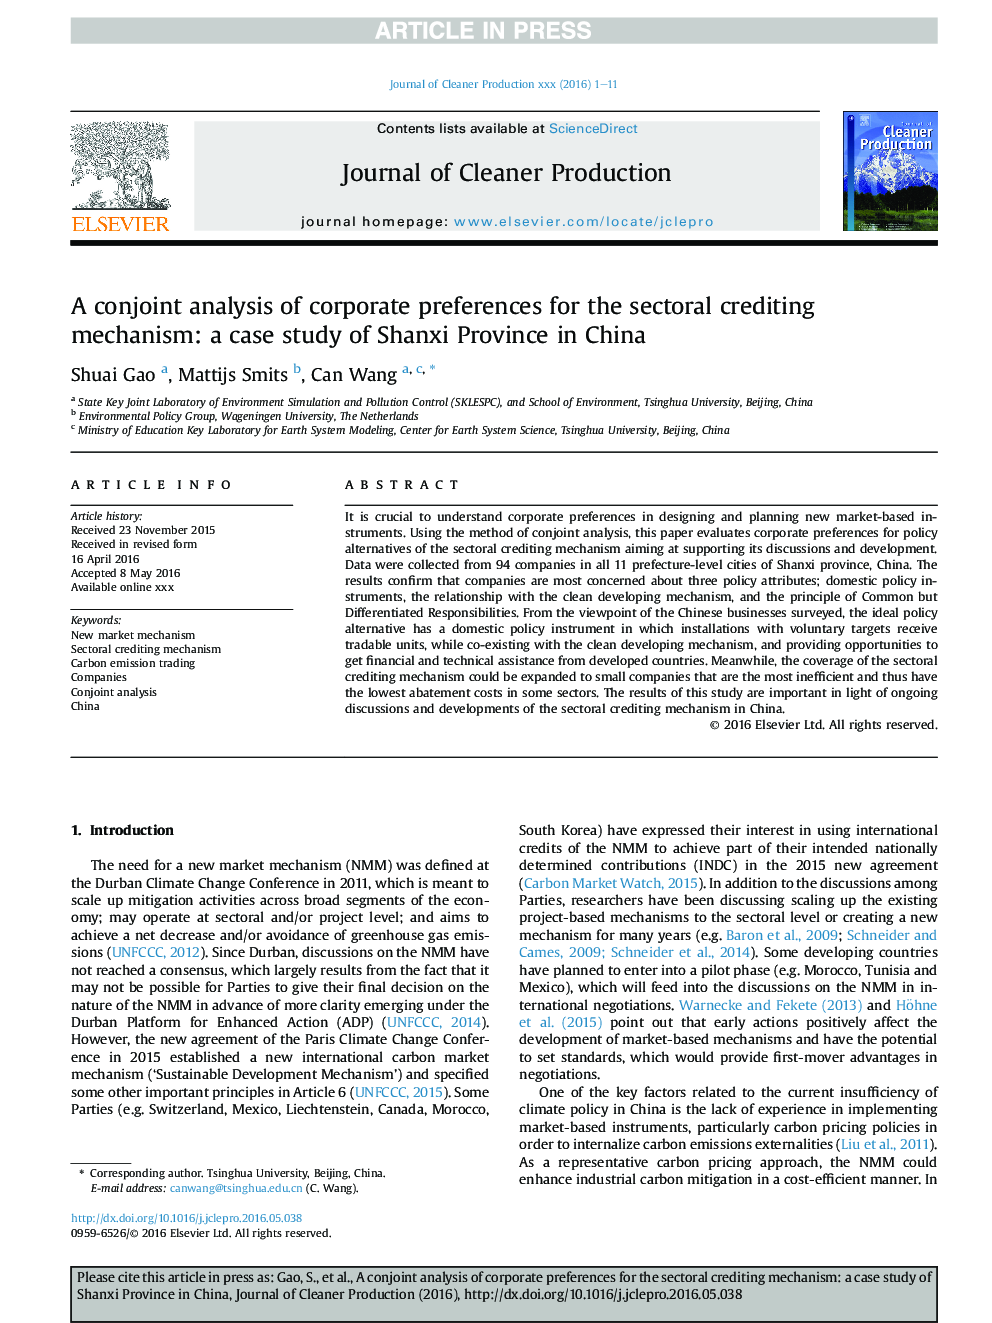 تجزیه و تحلیل مشترک از ترجیحات شرکت برای مکانیسم اعتباری بخش: یک مطالعه مورد از استان شانشی در چین است 